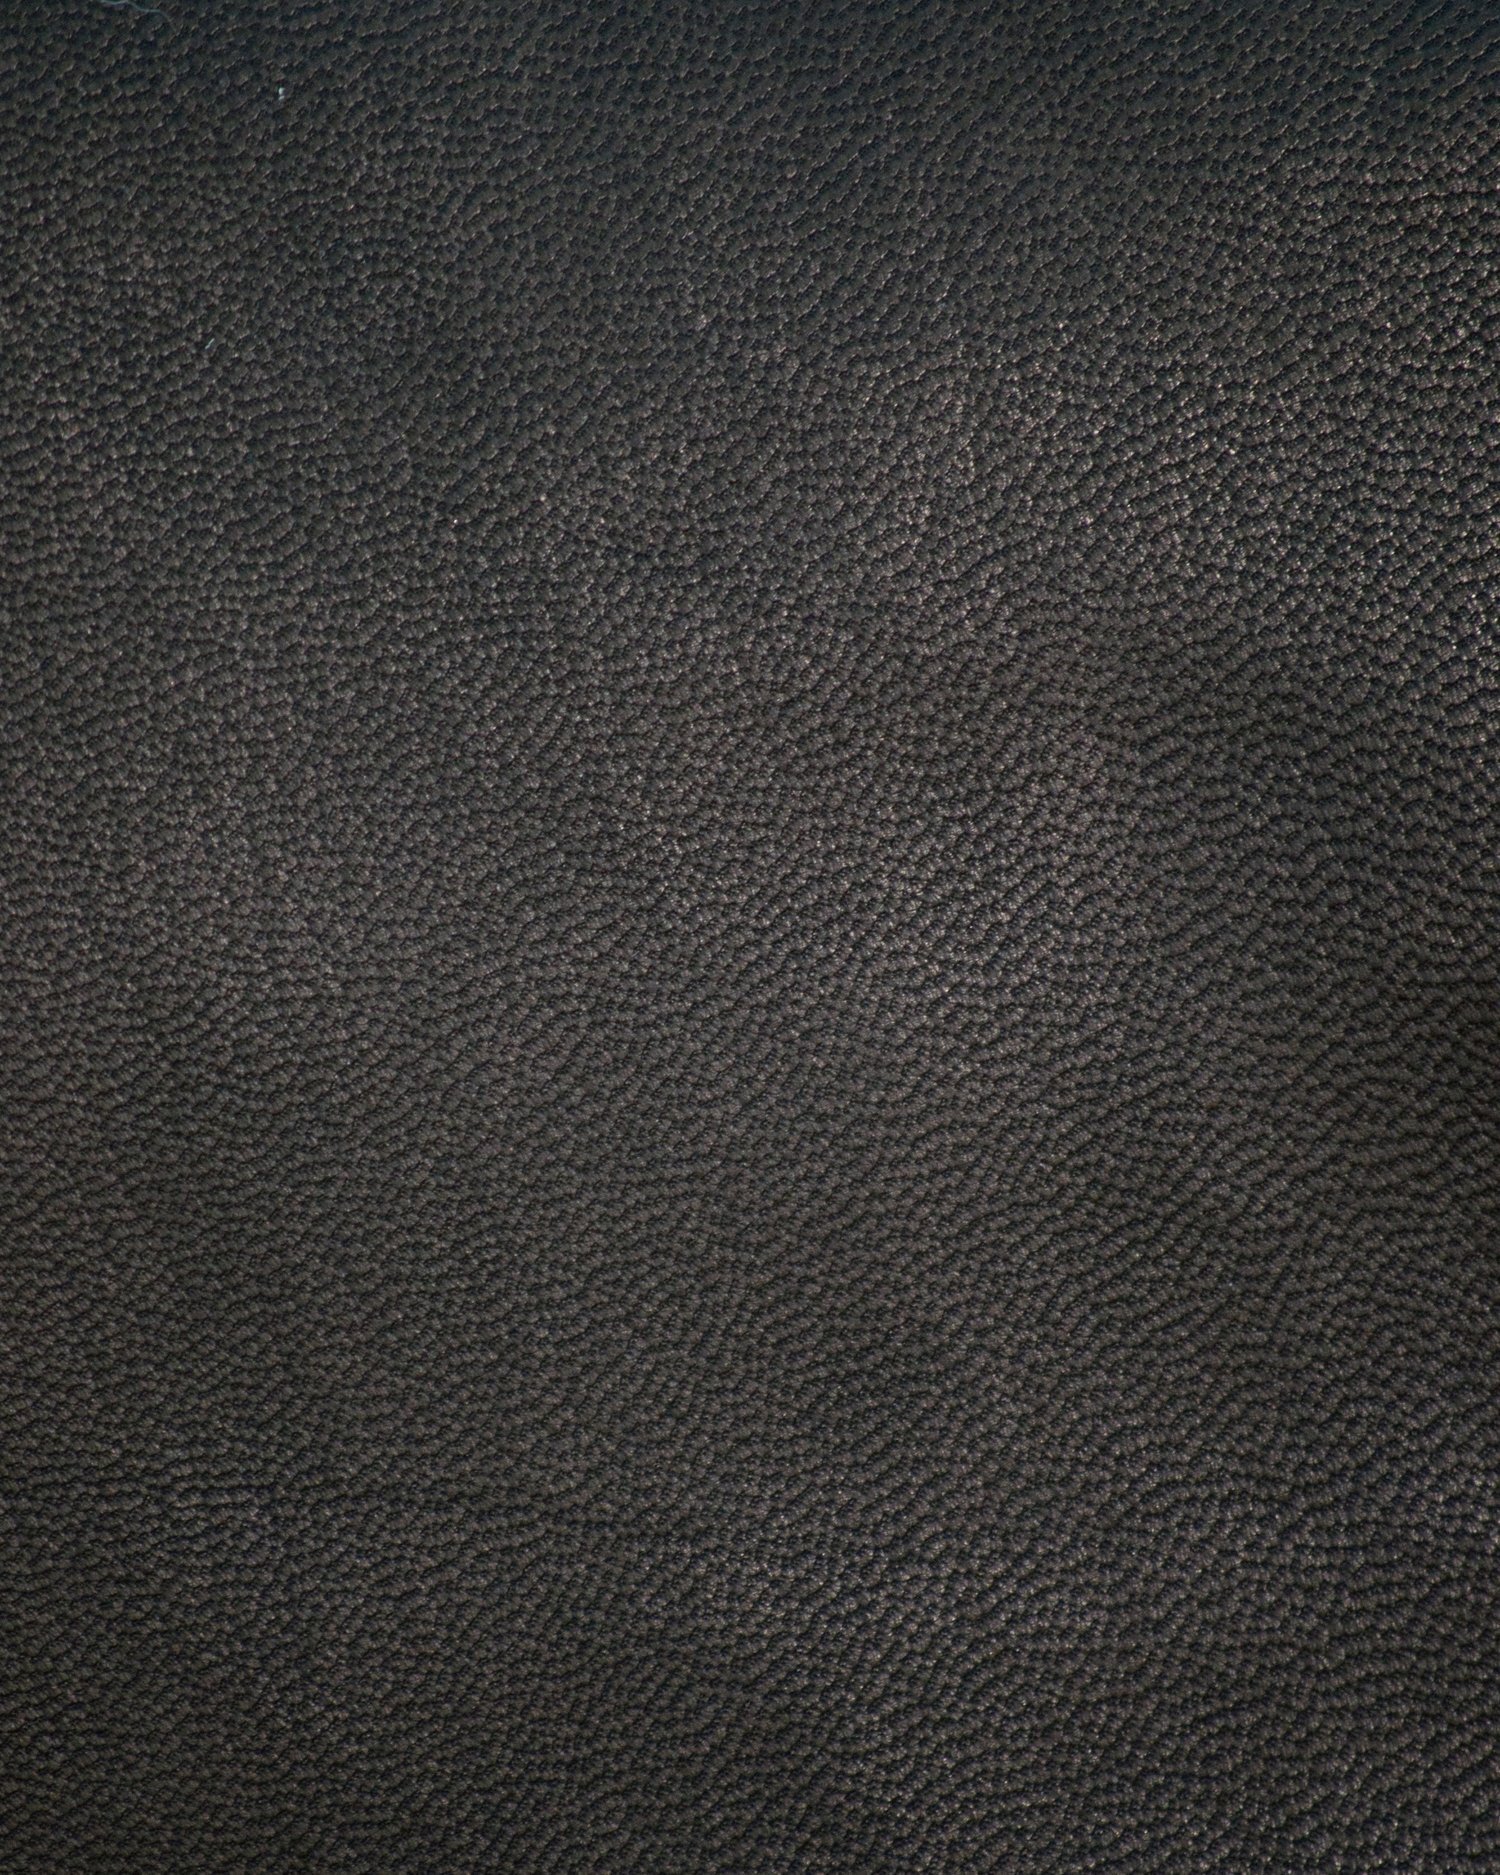 Leather Colors — Pergamena